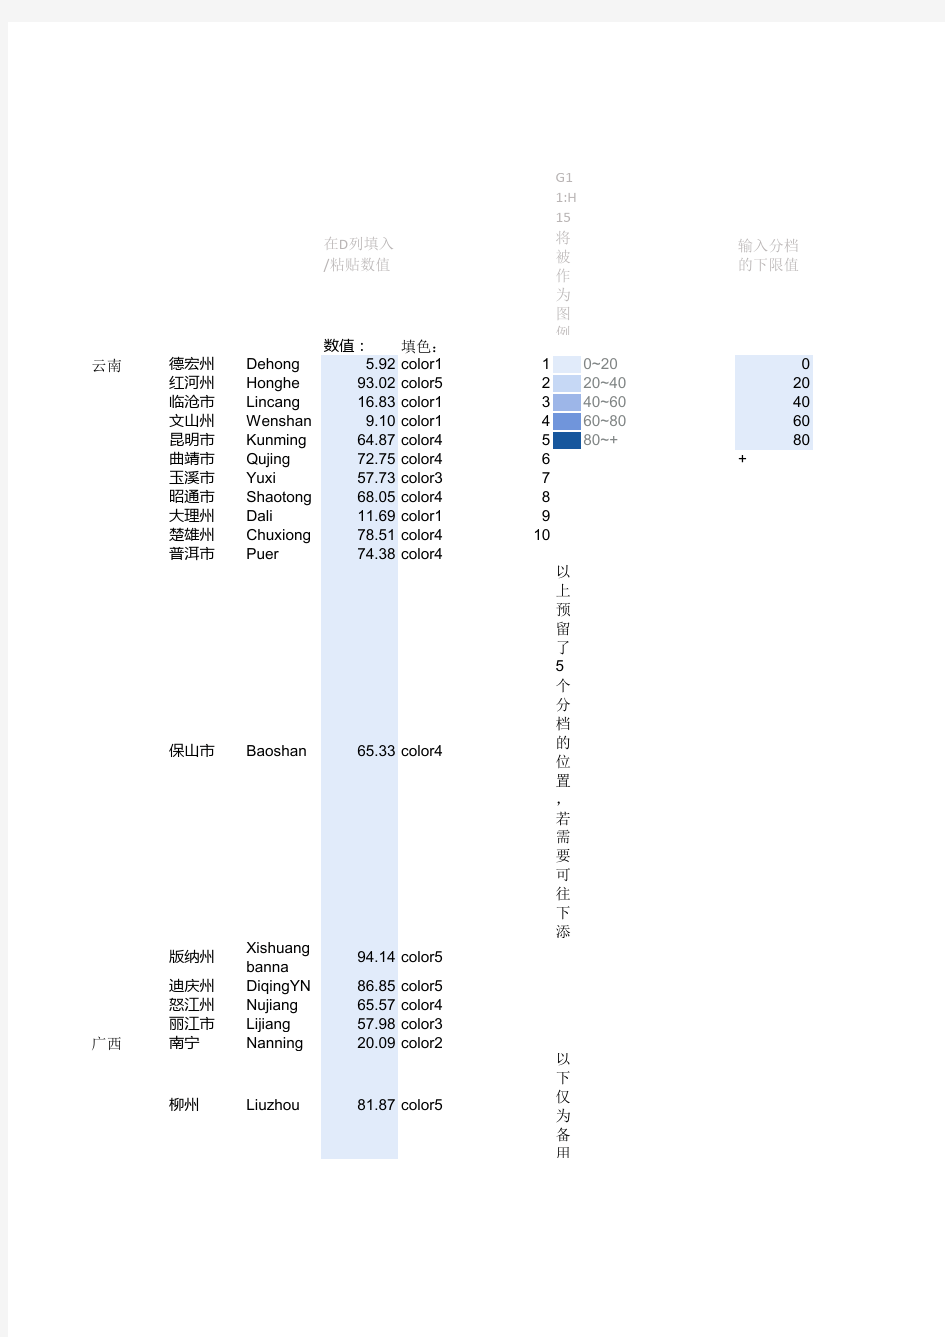 中国数据地图-到市级-分档填色-无标签简洁版